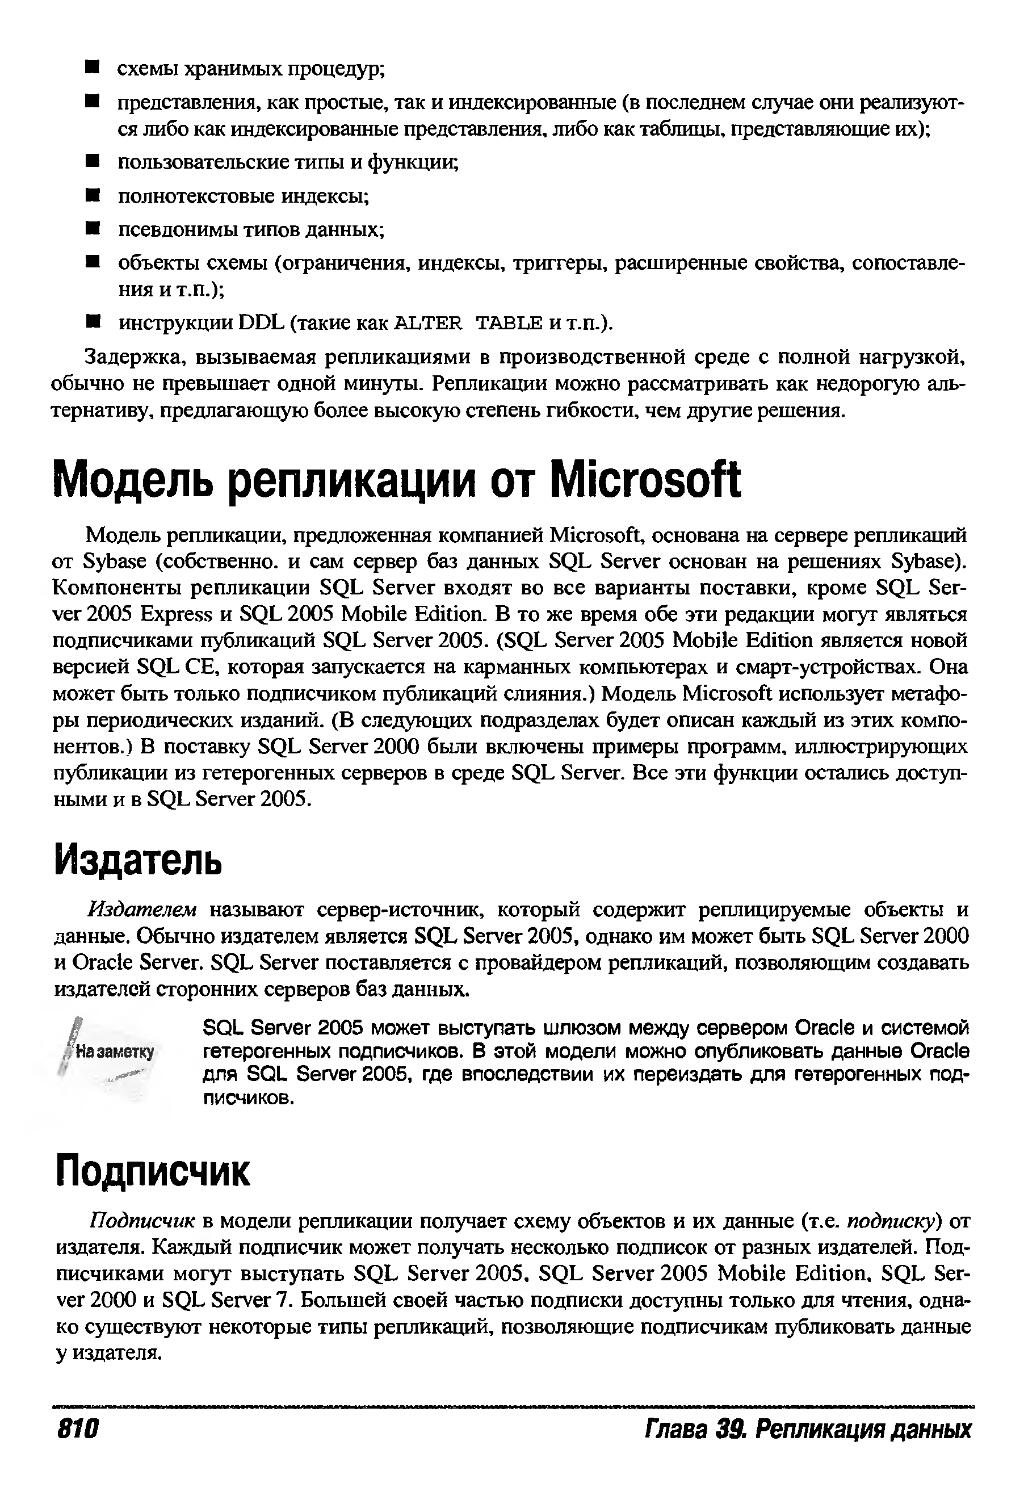 Модель репликации от Microsoft